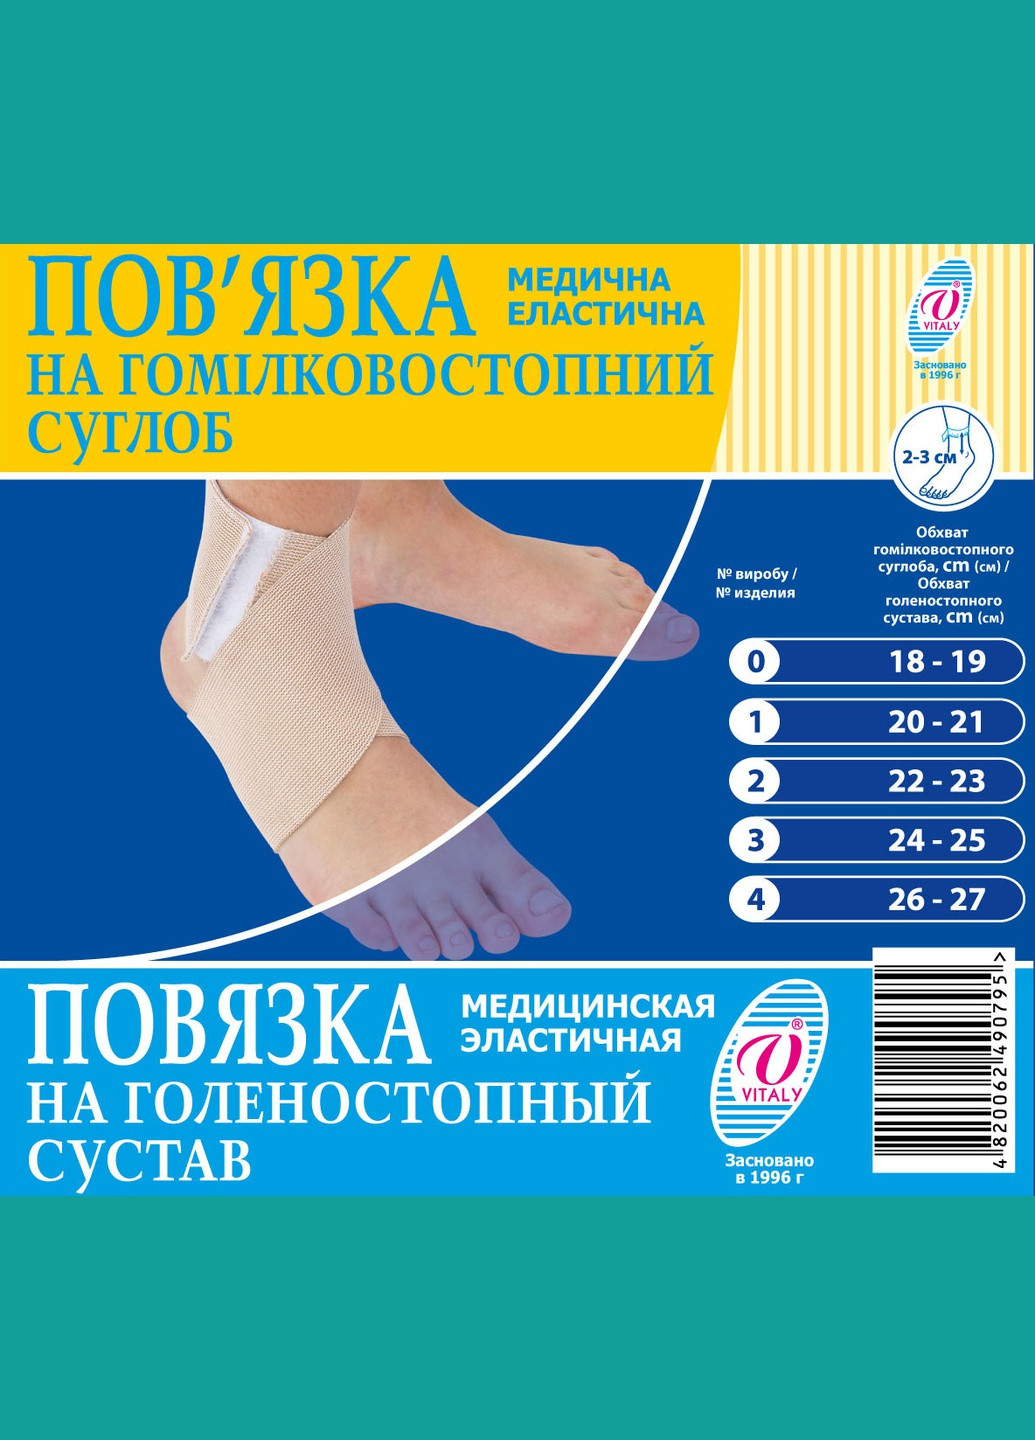 Бандаж на голеностопный сустав, повязка медицинская эластичная фиксатор голеностопного сустава ВIТАЛI размер № (2918) Віталі (264208267)